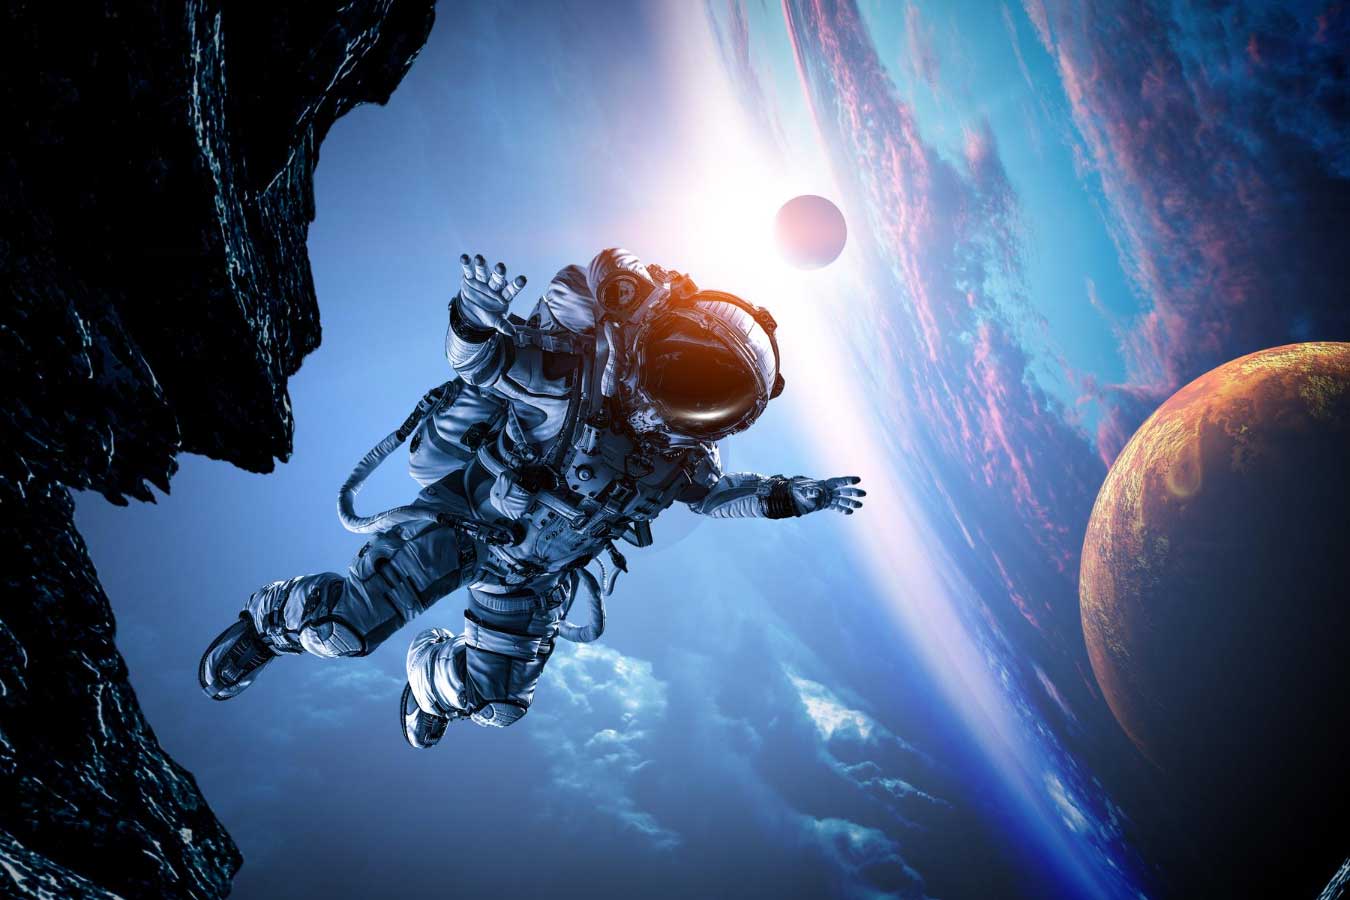 Las misiones espaciales podrían aumentar el riesgo de disfunción eréctil entre los astrónomos masculinos